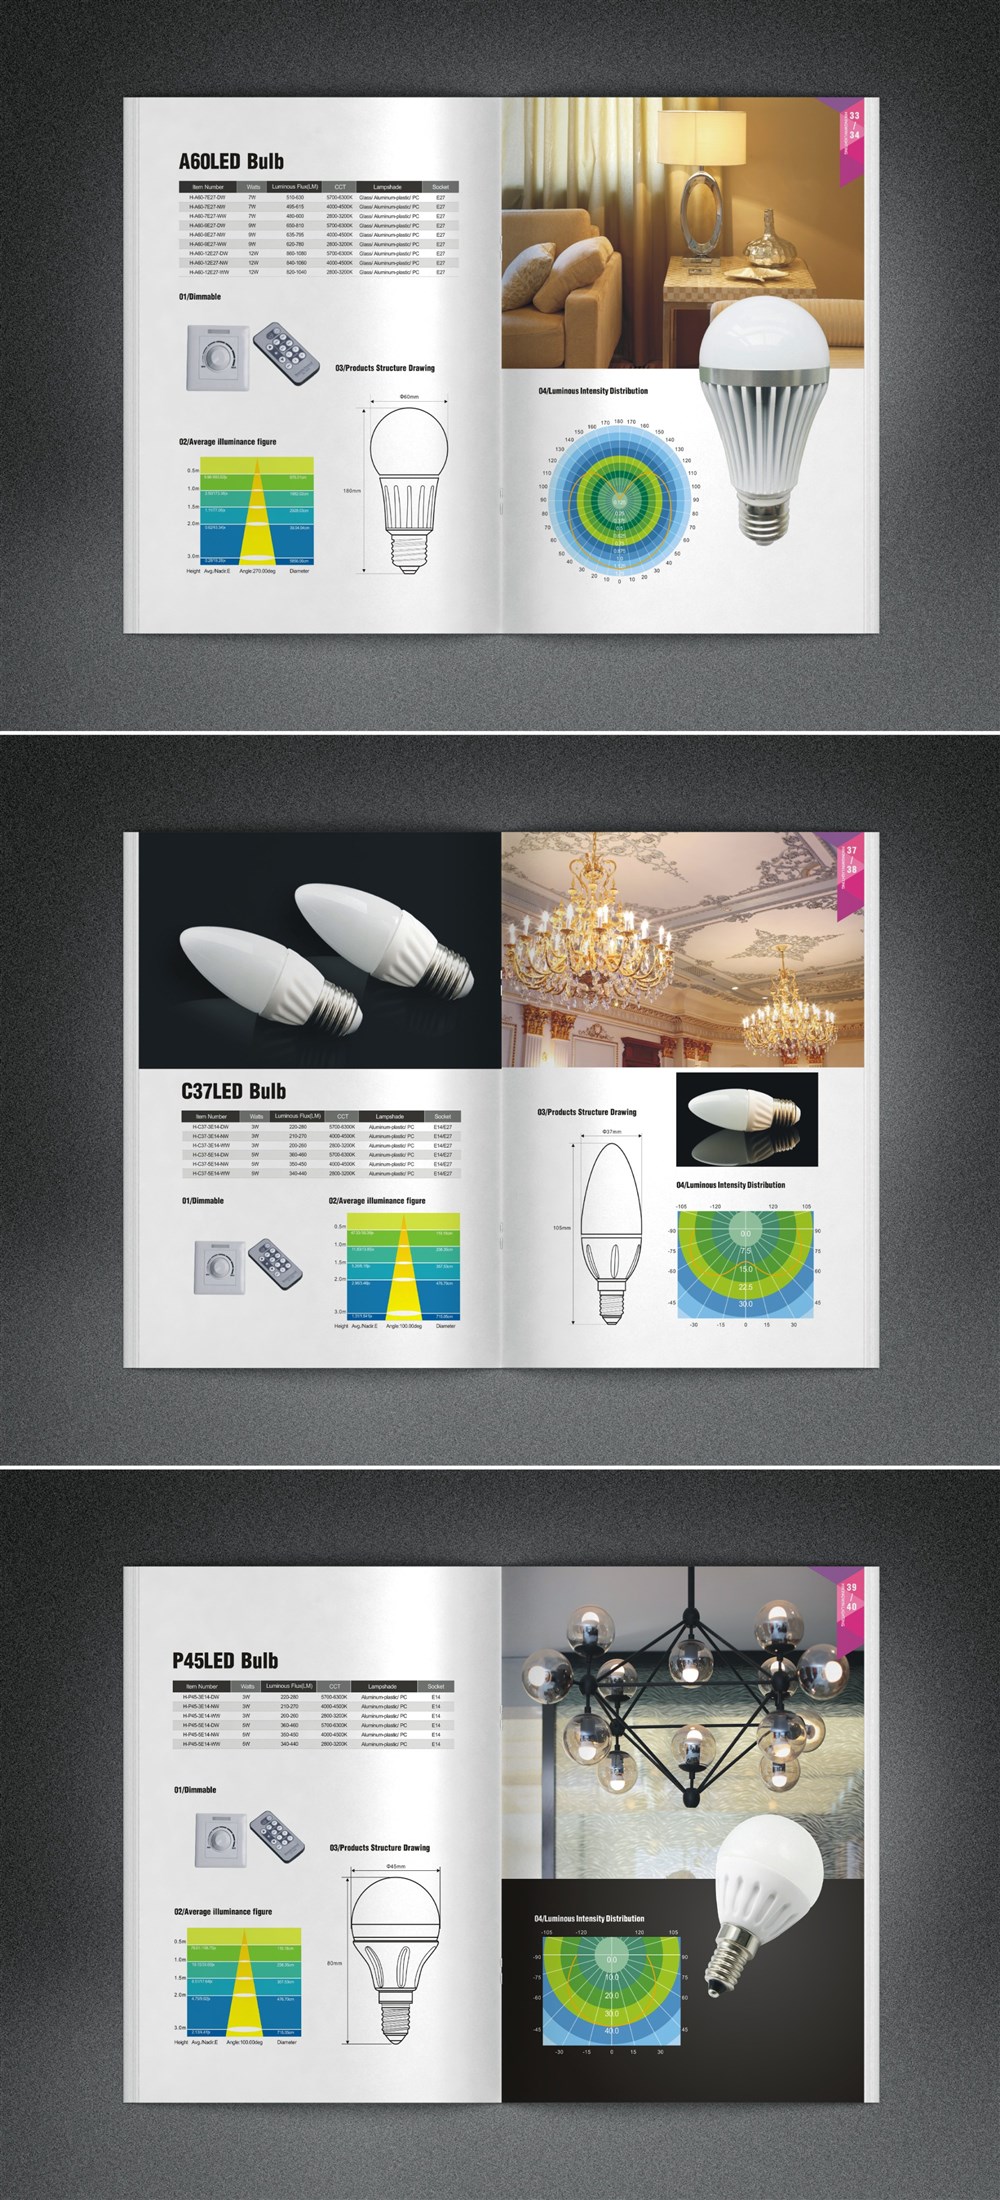 成都摩品广告设计MOPIN | 四川海金汇光电LED产品画册设计及产品拍摄